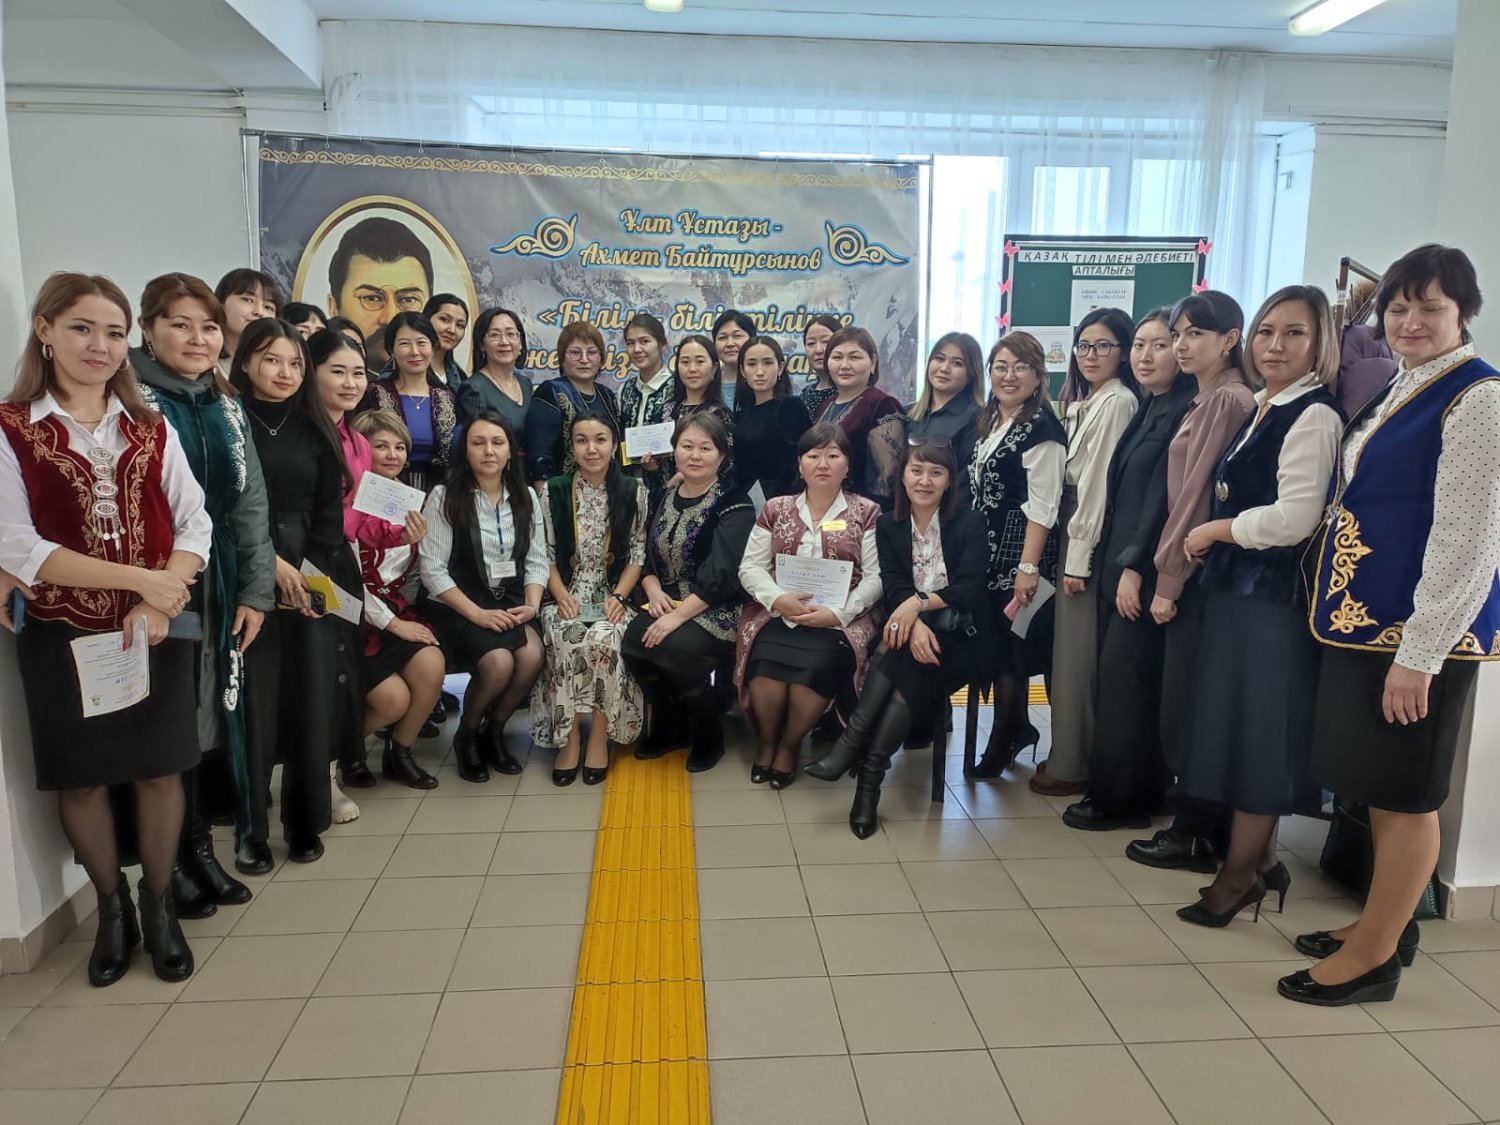 Использование новых подходов на уроках казахского языка и литературы в рамках реализации республиканского проекта "Читающая школа, читающая нация